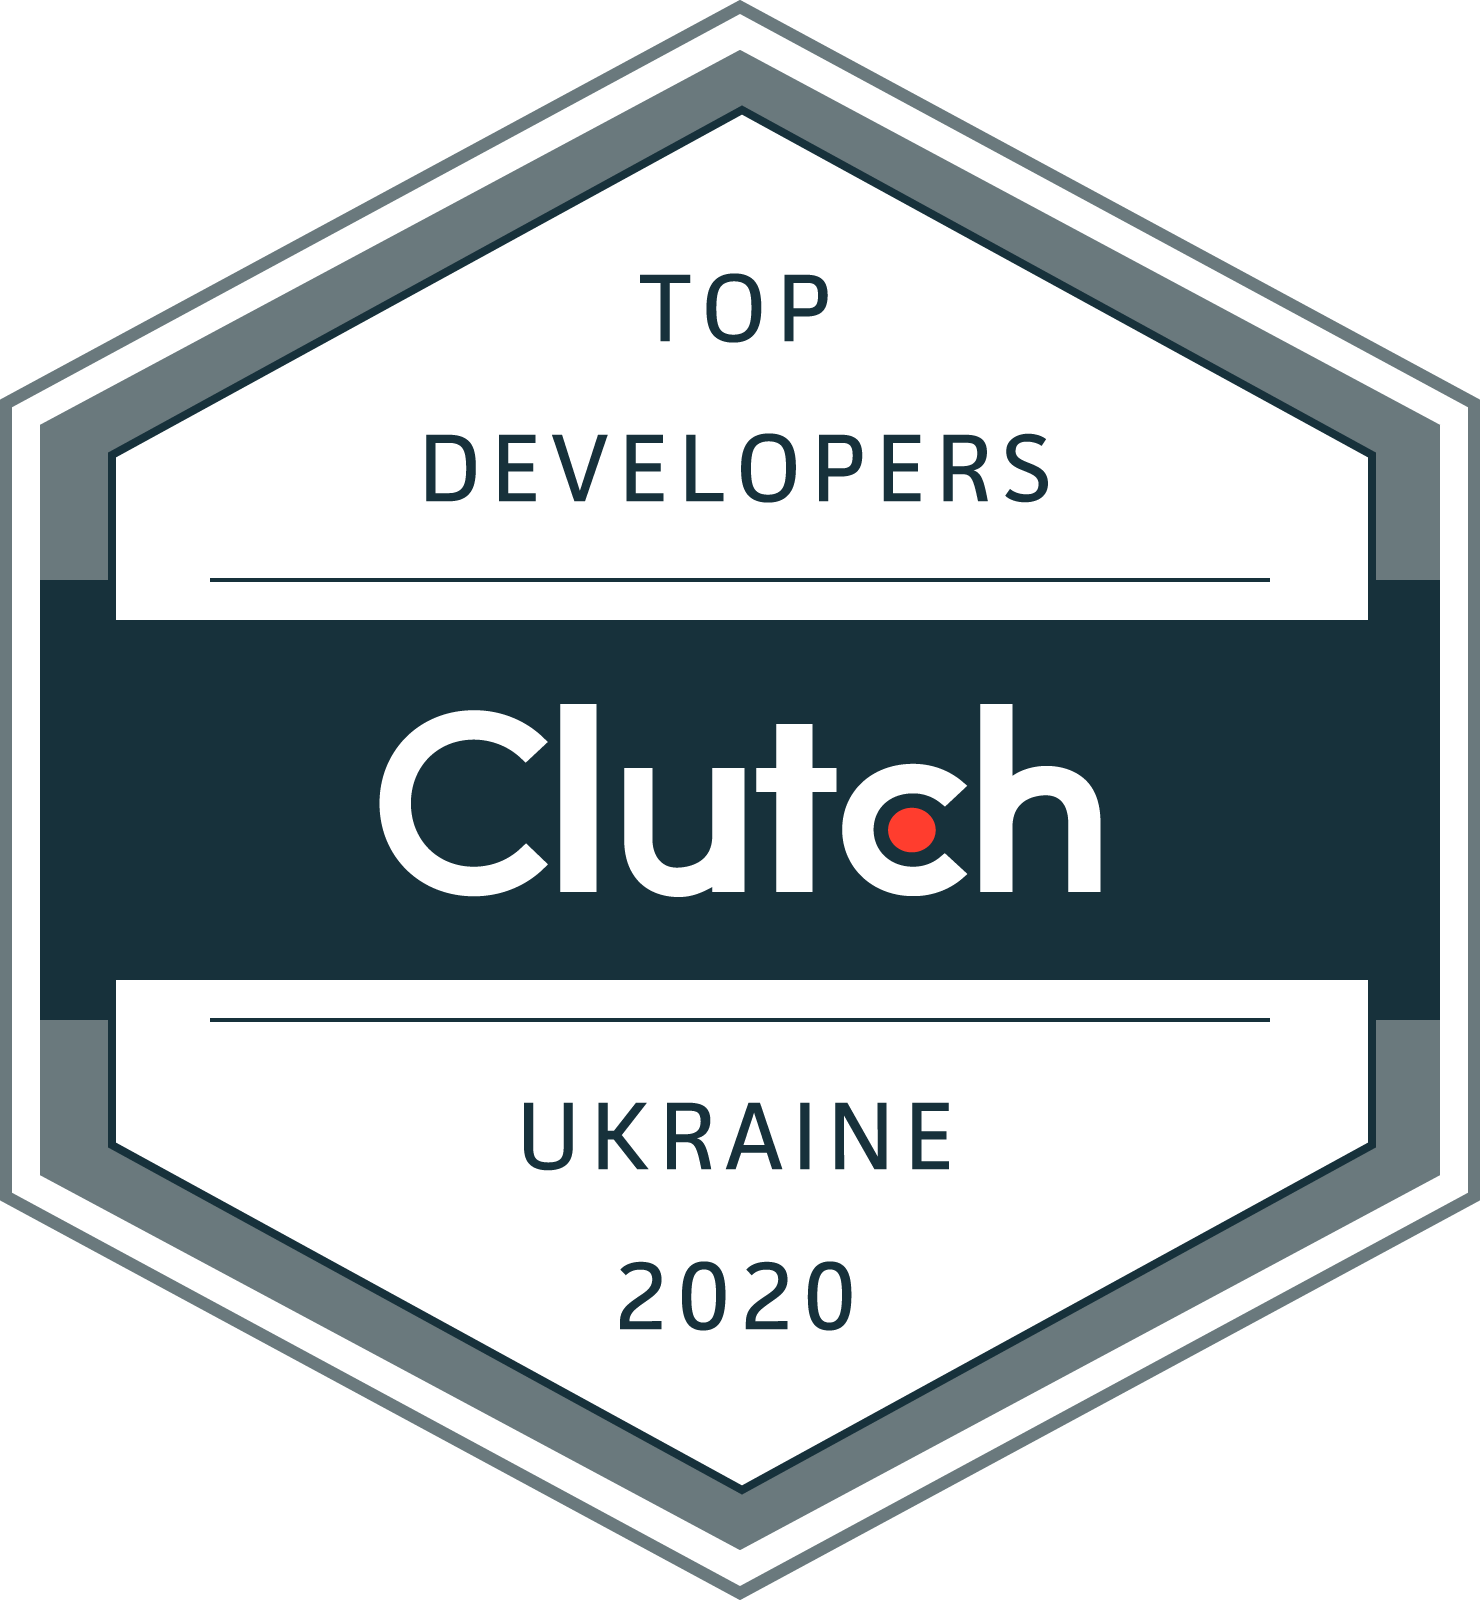 Clutch Top Web Development Partner in Ukraine